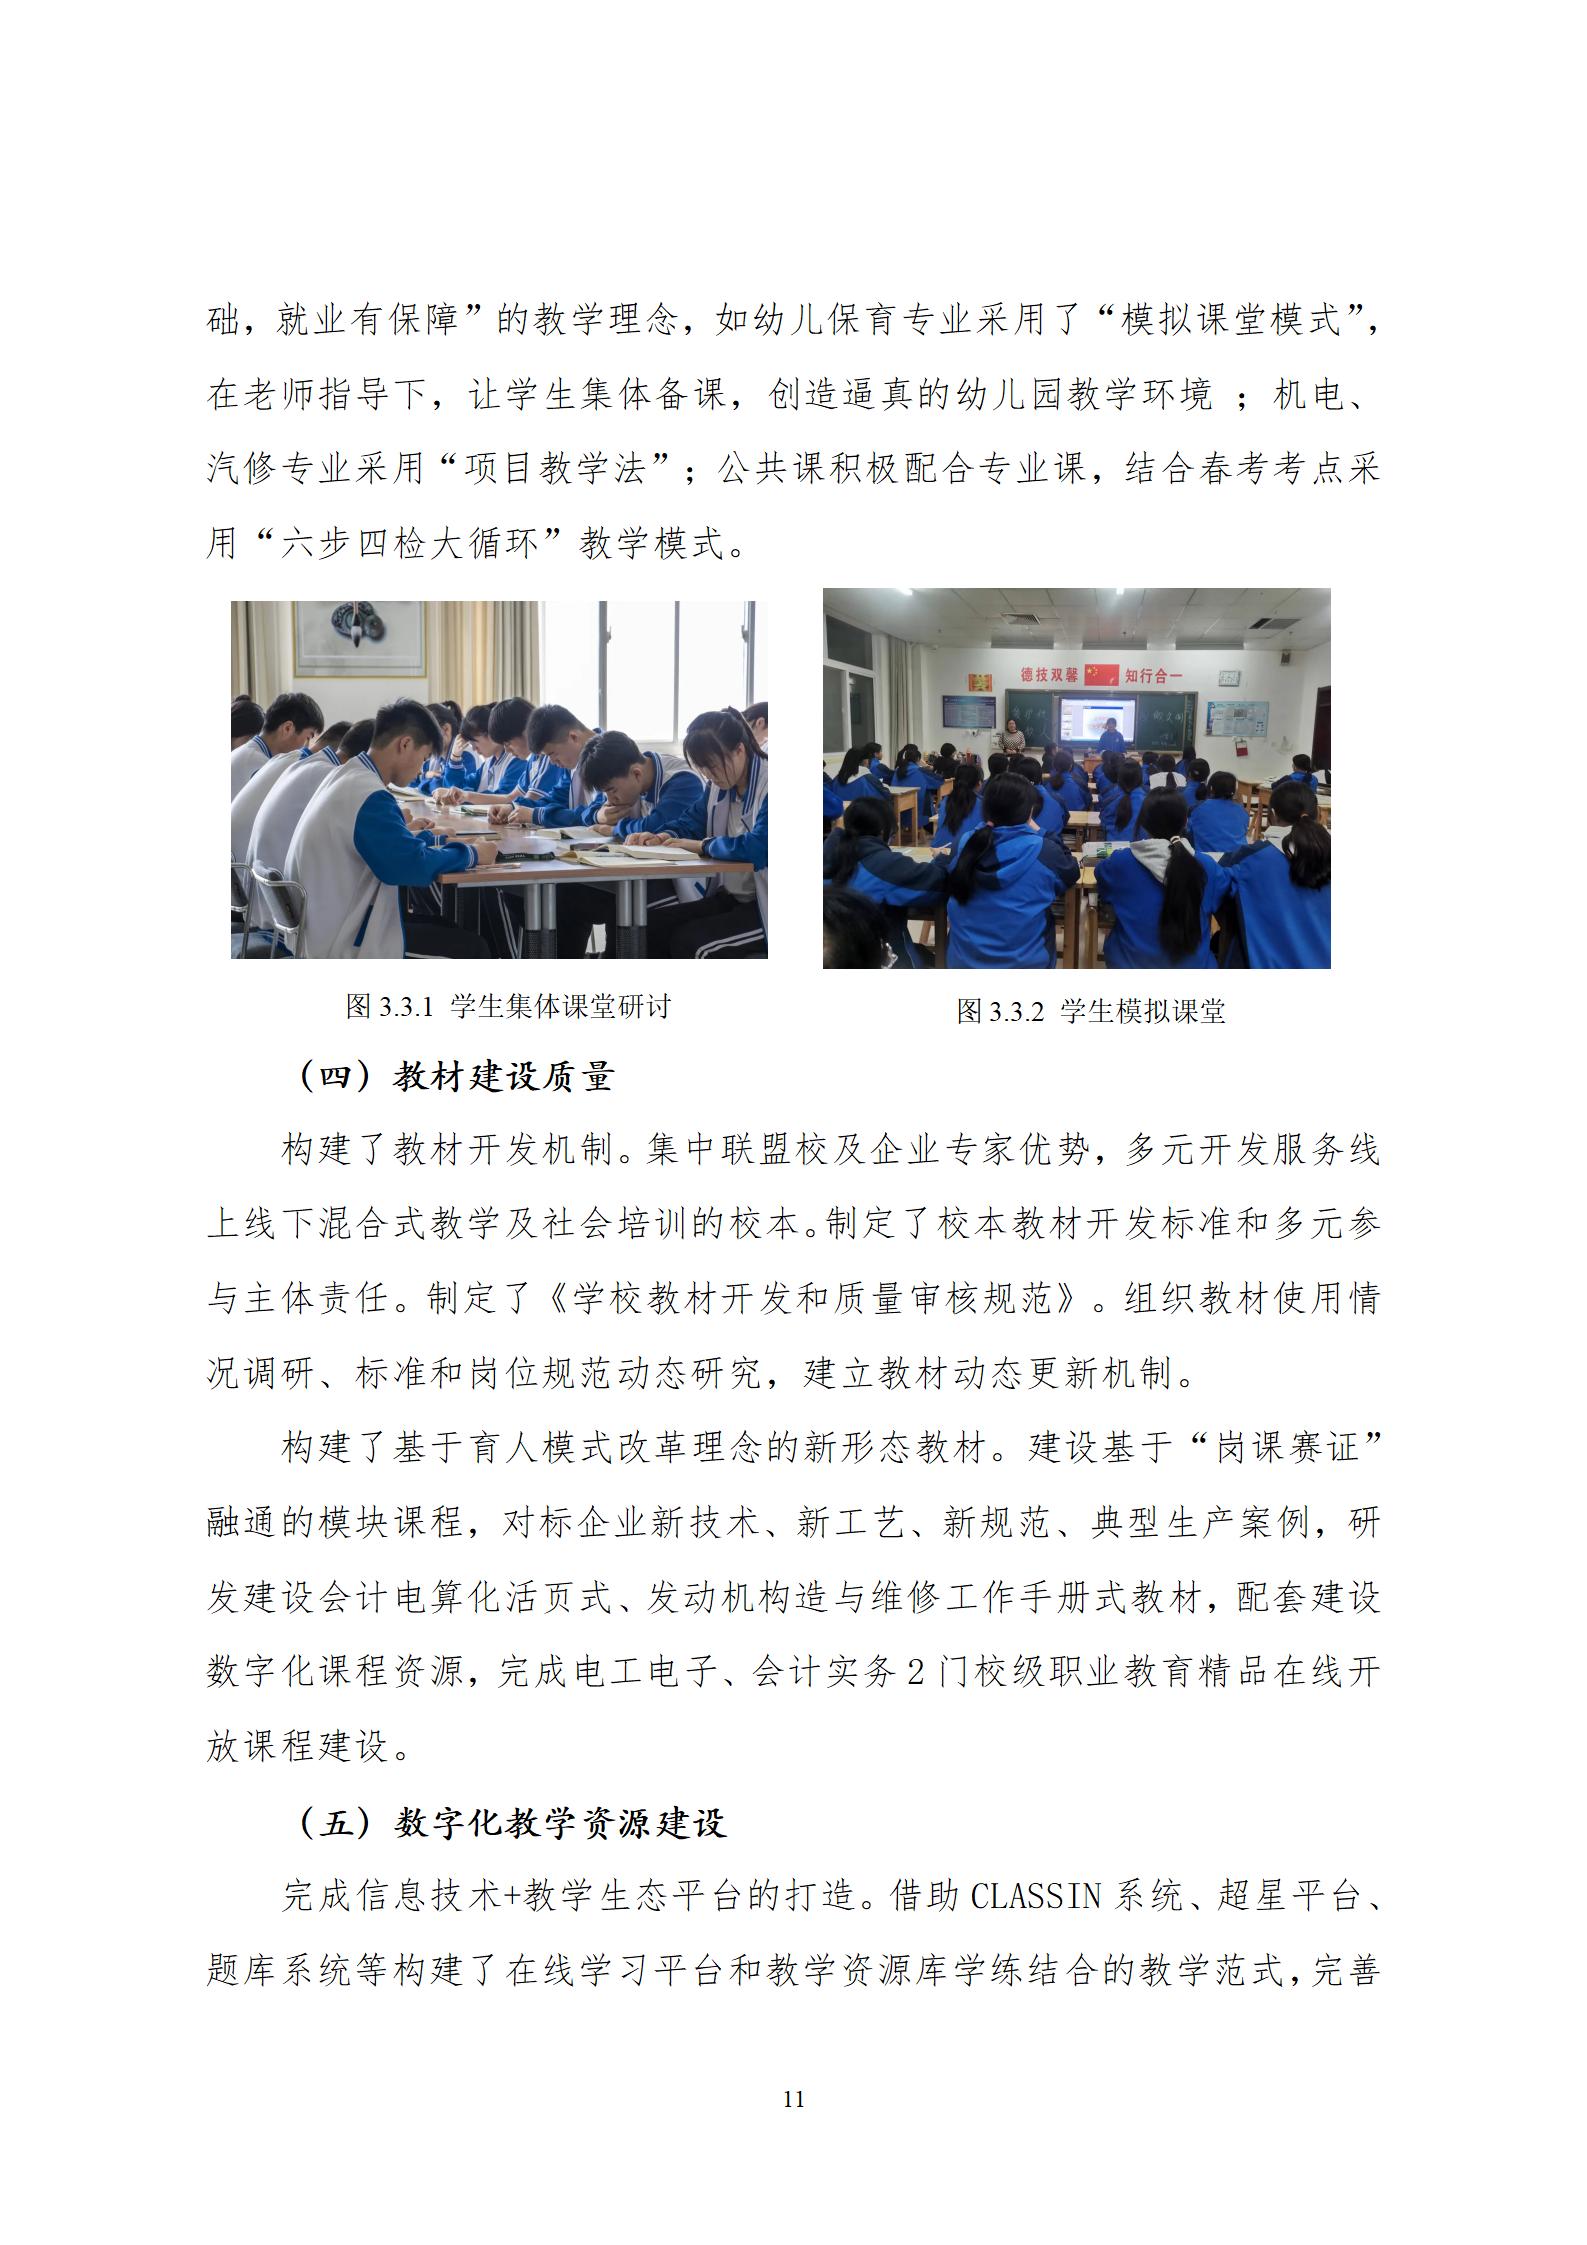 2022年渤海经济发展中等专业学校年度质量报告(1)_15.jpg